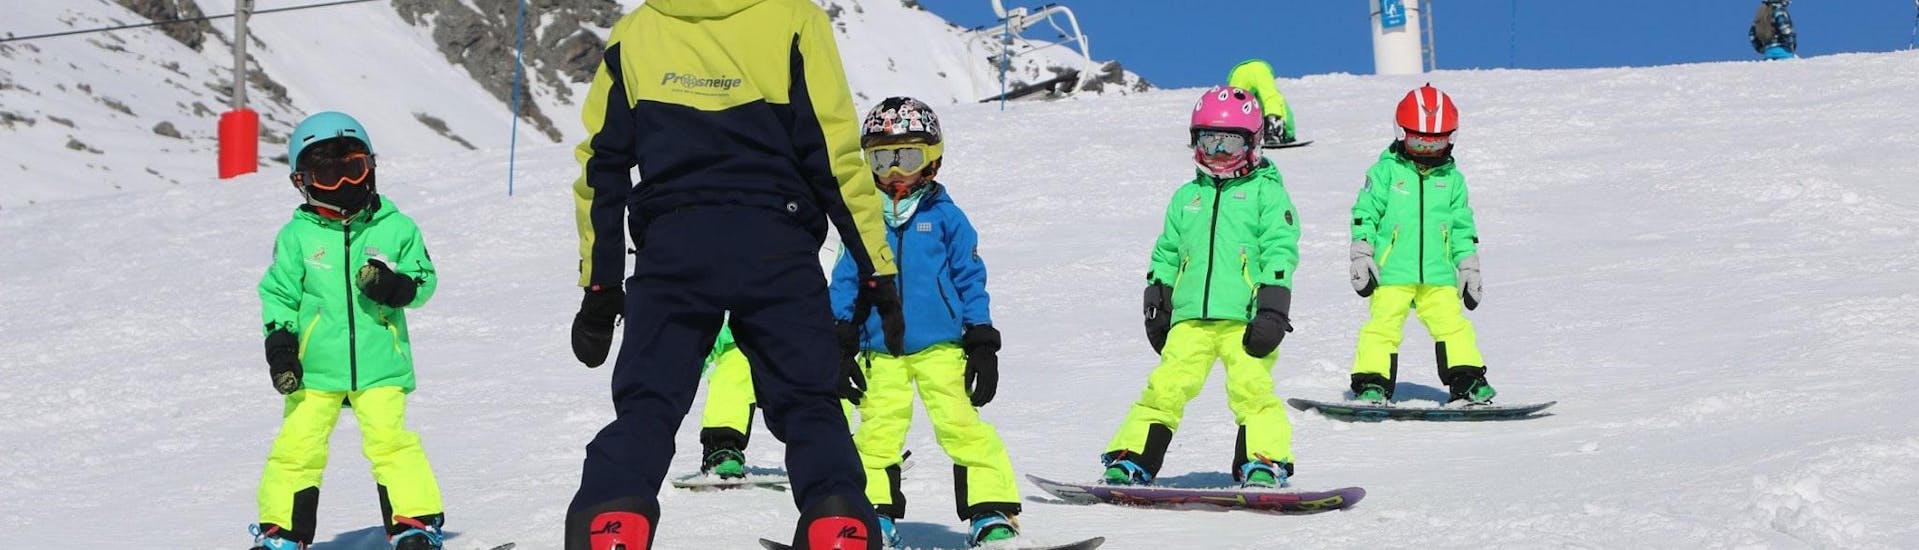 Un instructor de esquí de la escuela de esquí Prosneige Méribel está enseñando a niños sonrientes, durante las clases de snowboard para niños de todas las edades y todos los niveles.